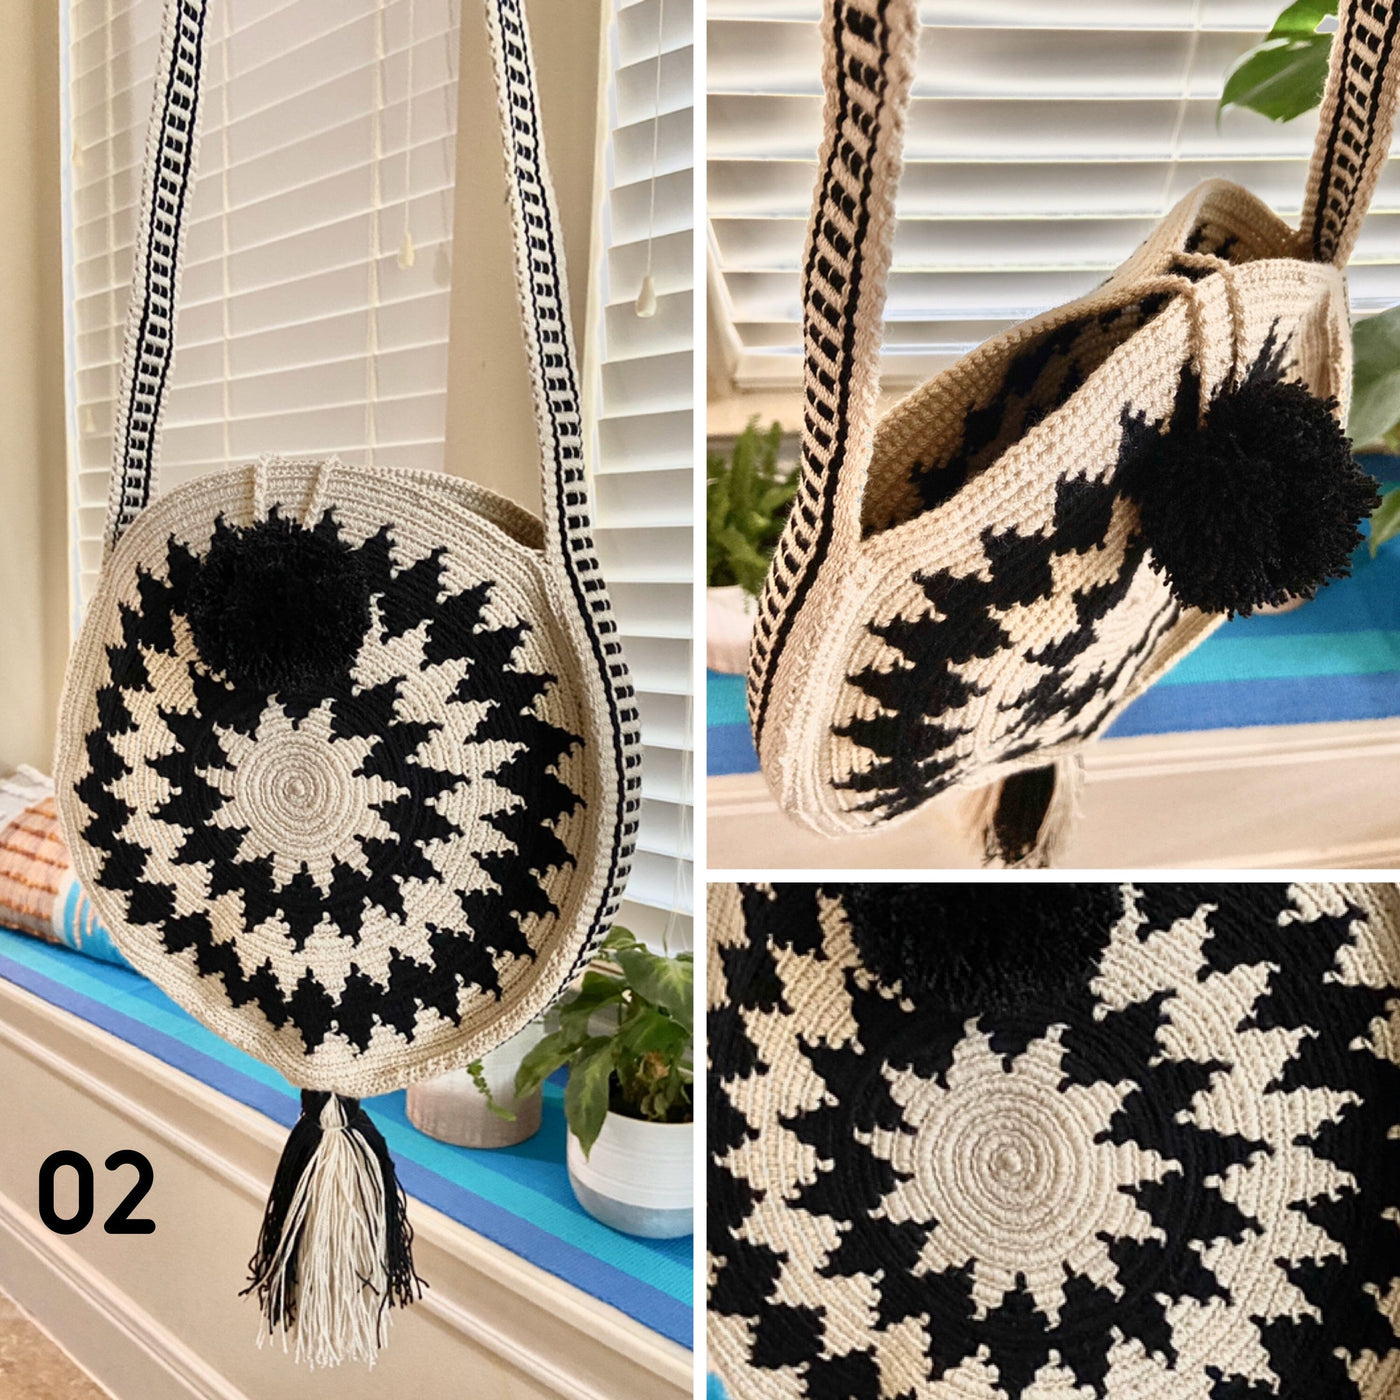 White and Black Trending Summer Bag | Boho Handbags | Rounded Hand-Crocheted Bag